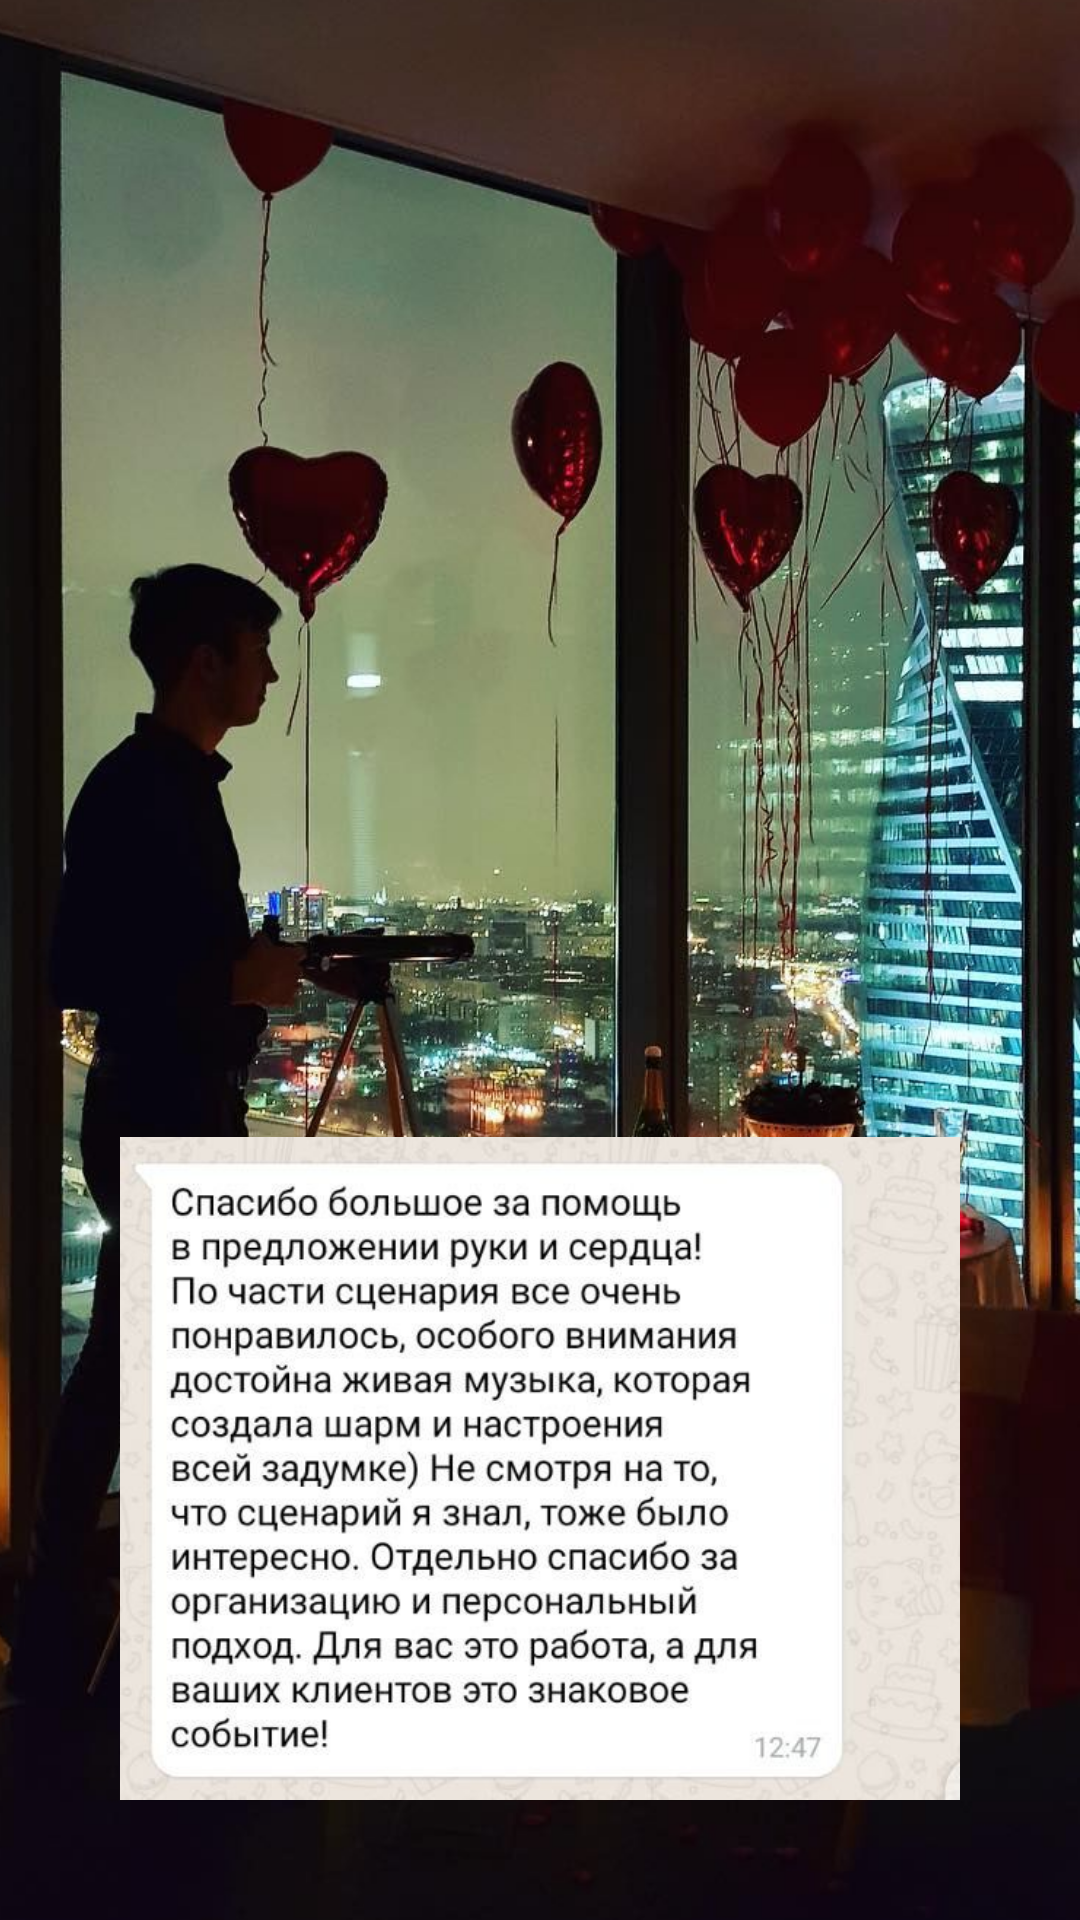 Организация предложения руки и сердца во Владимире
от компании Pandaevent